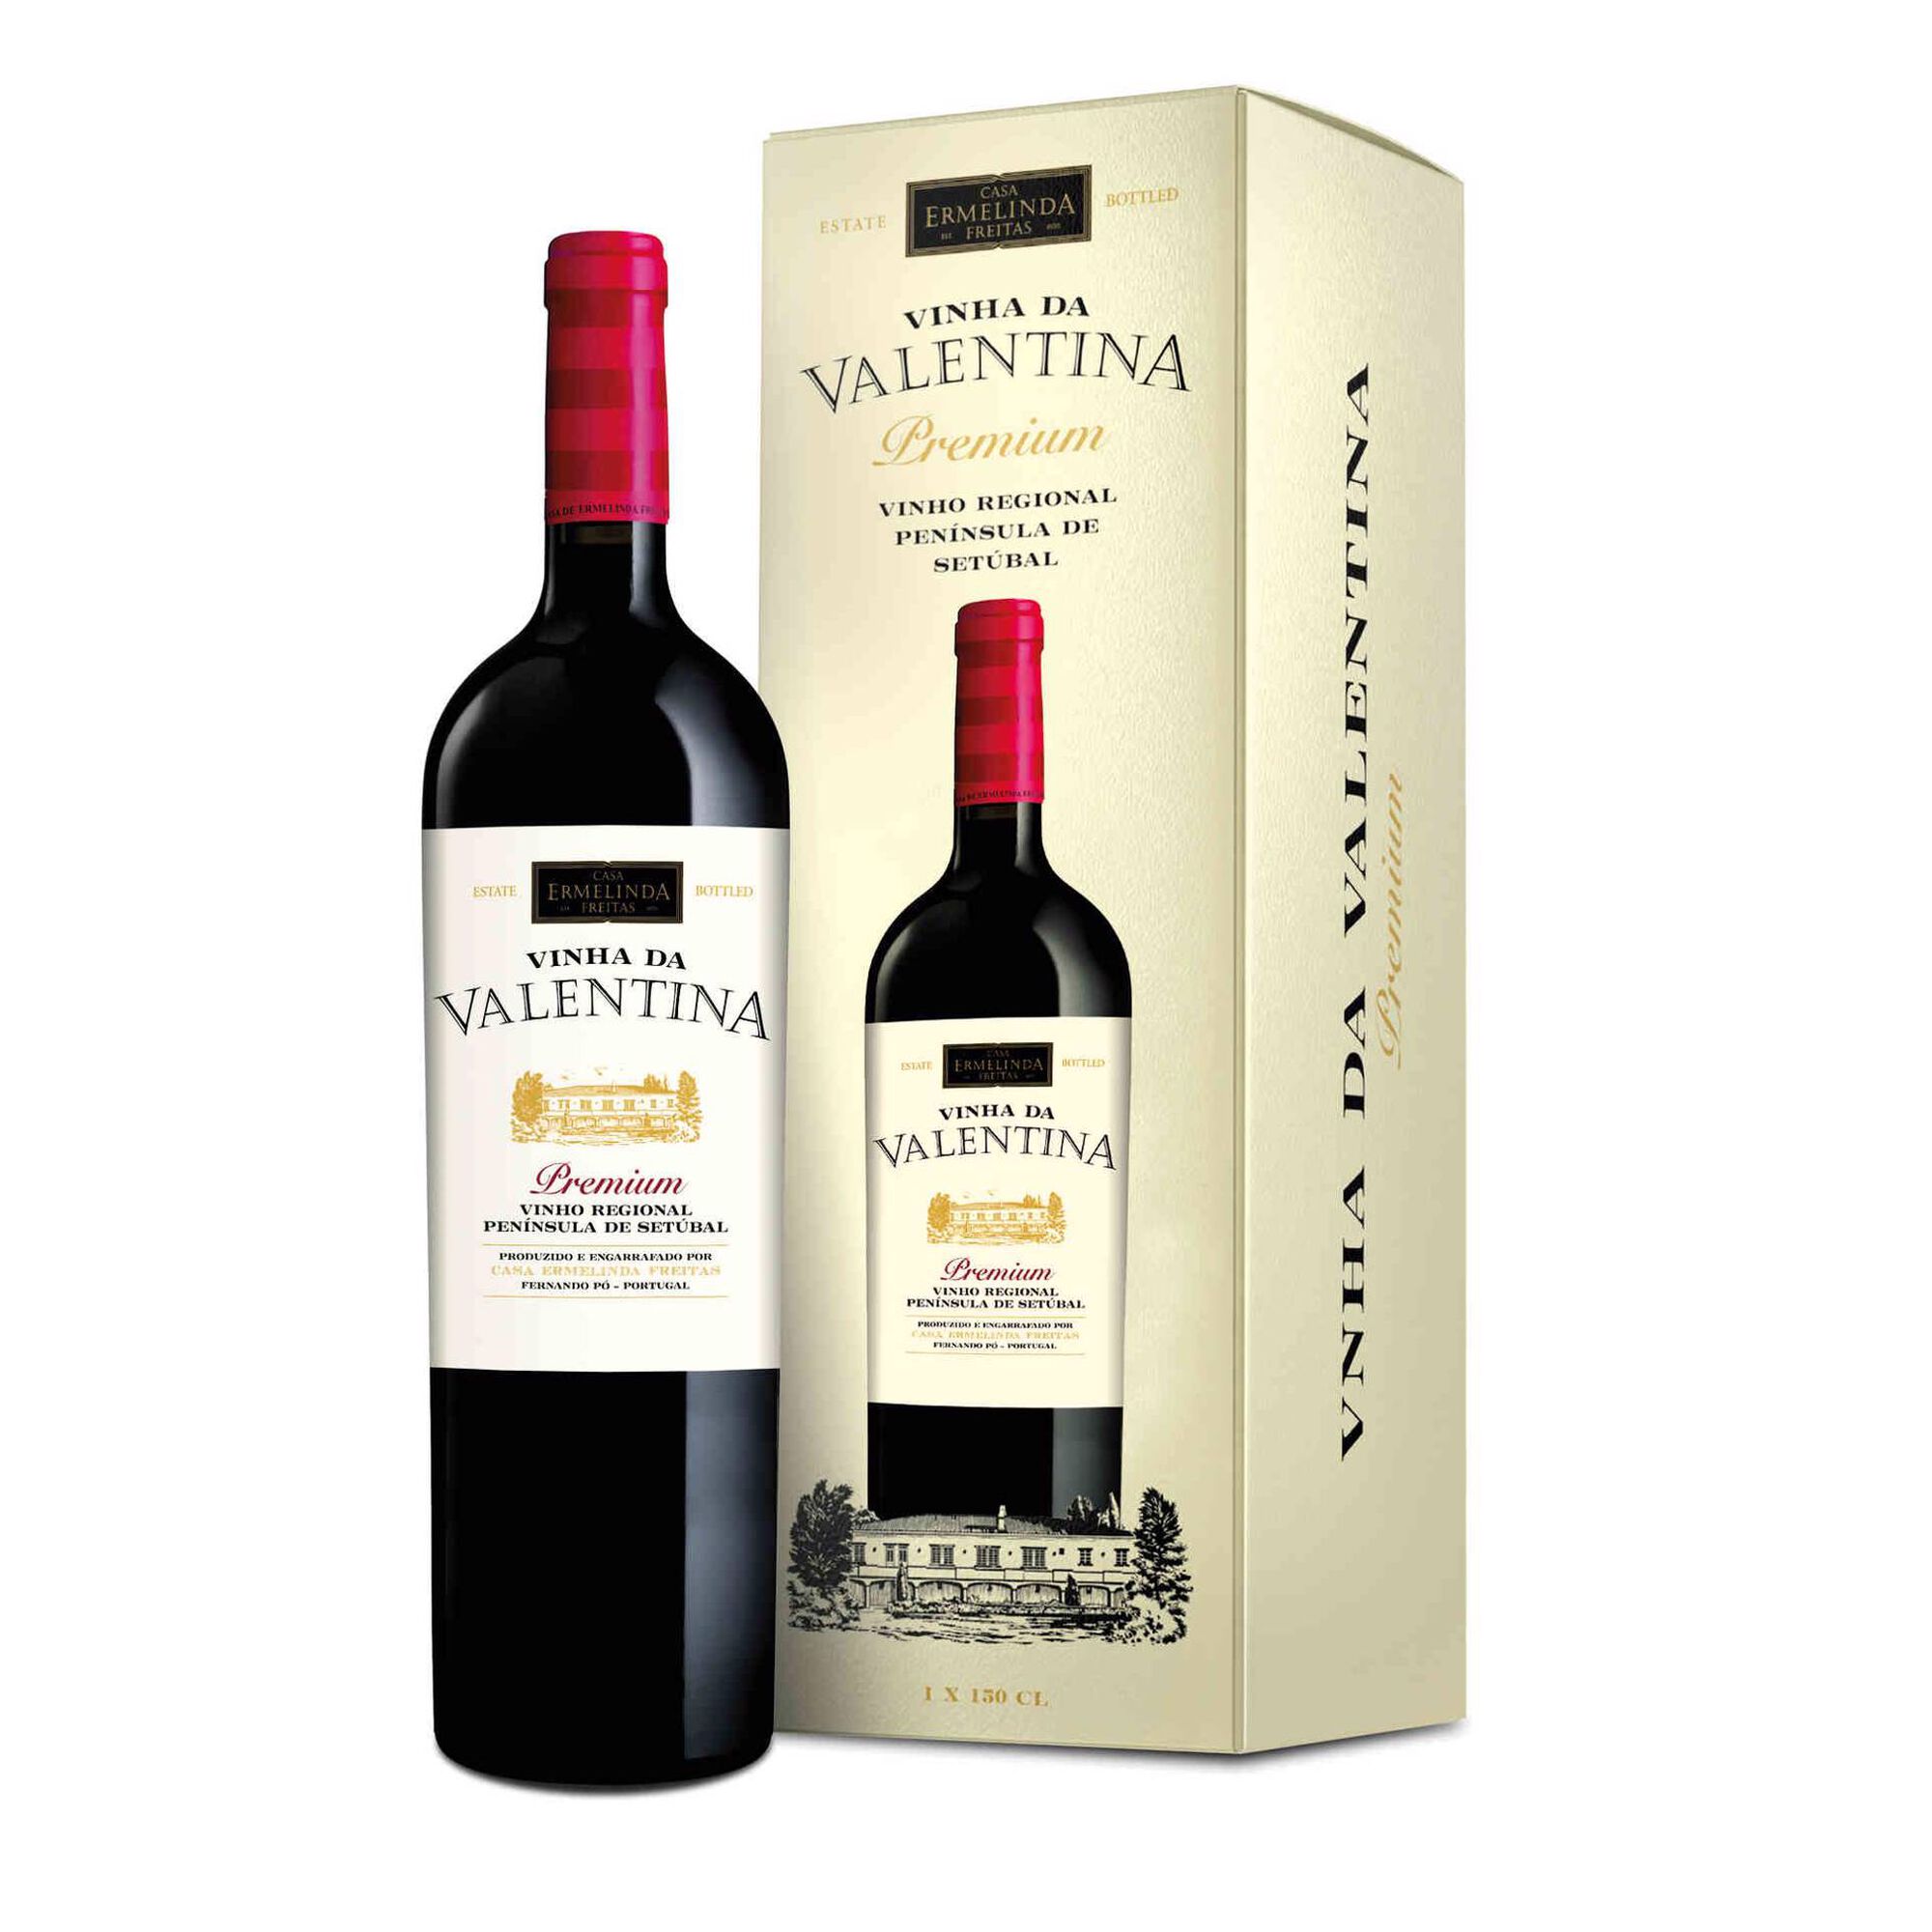 Vinha da Valentina Premium Regional Península de Setúbal Vinho Tinto